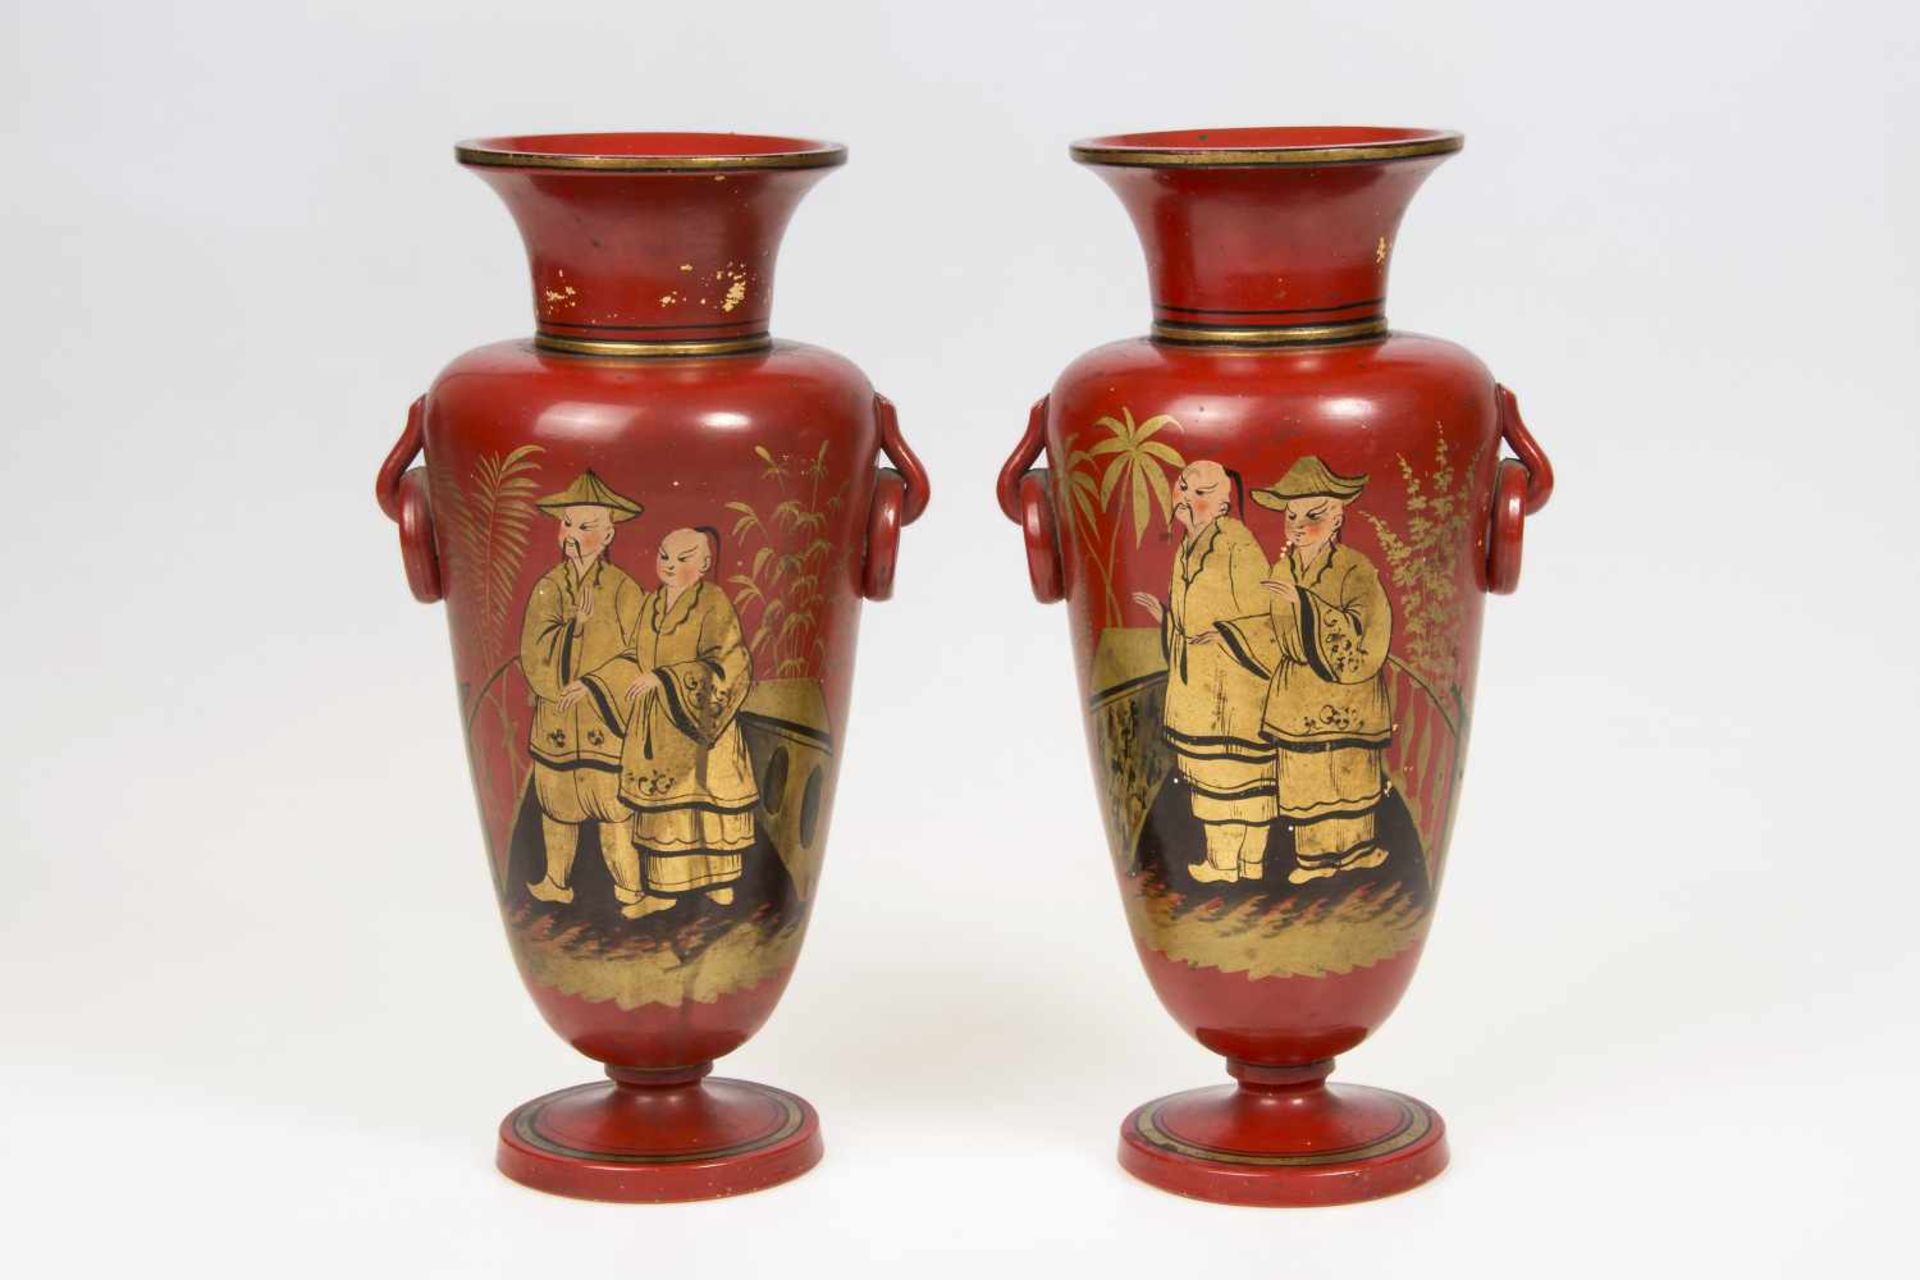 Paar Vasen mit seitlichen Handhaben, chinesischer Dekor, gebrannter Ton, rot gelackt, goldfarben